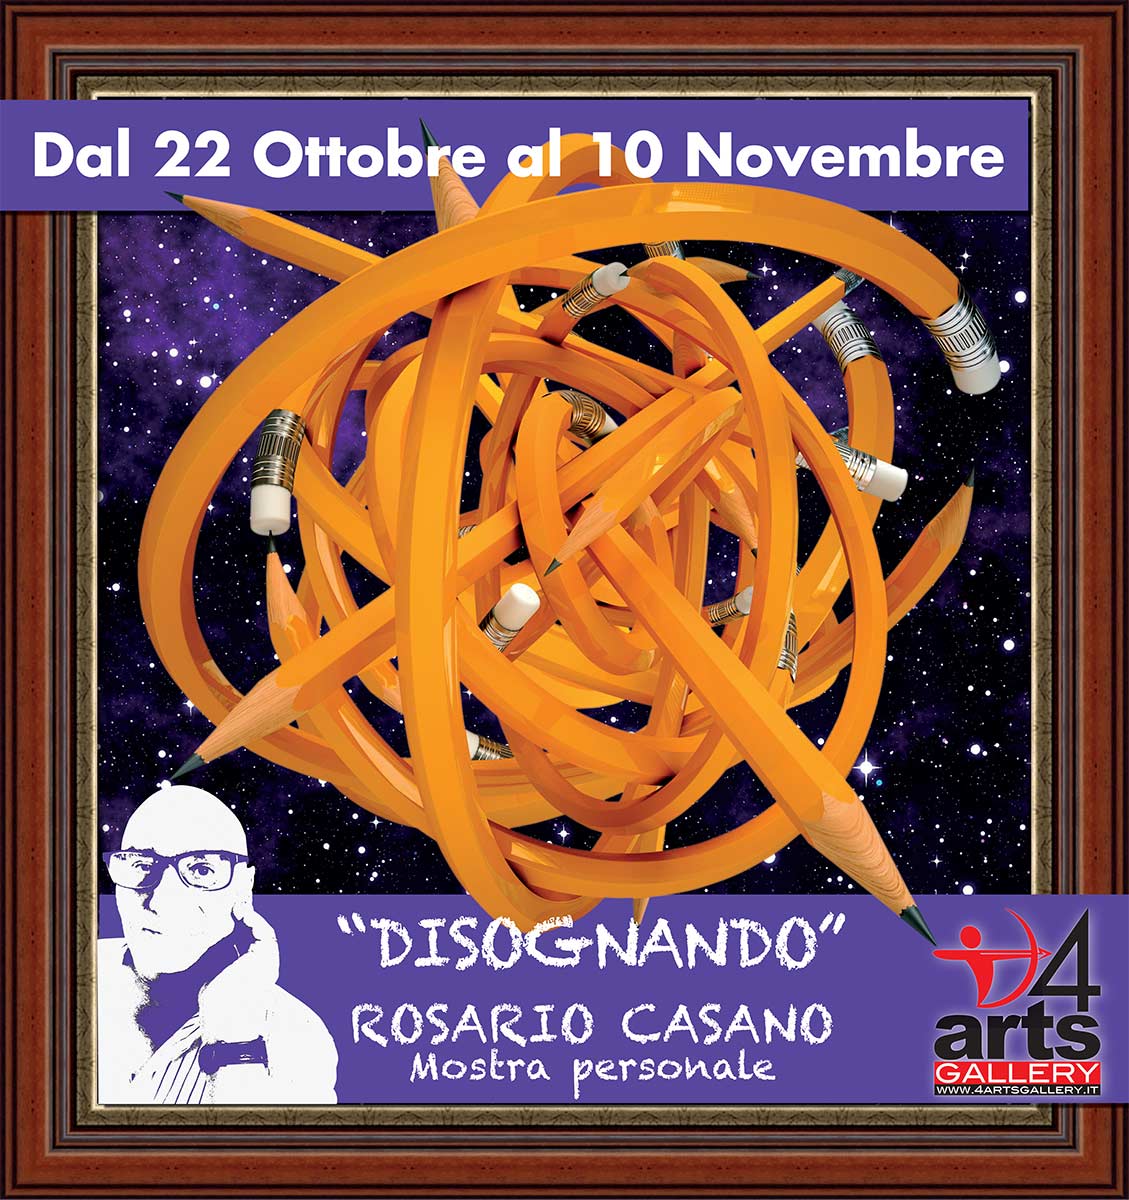 Rosario Casano - Disognando,  pannello 4ARTS Gallery